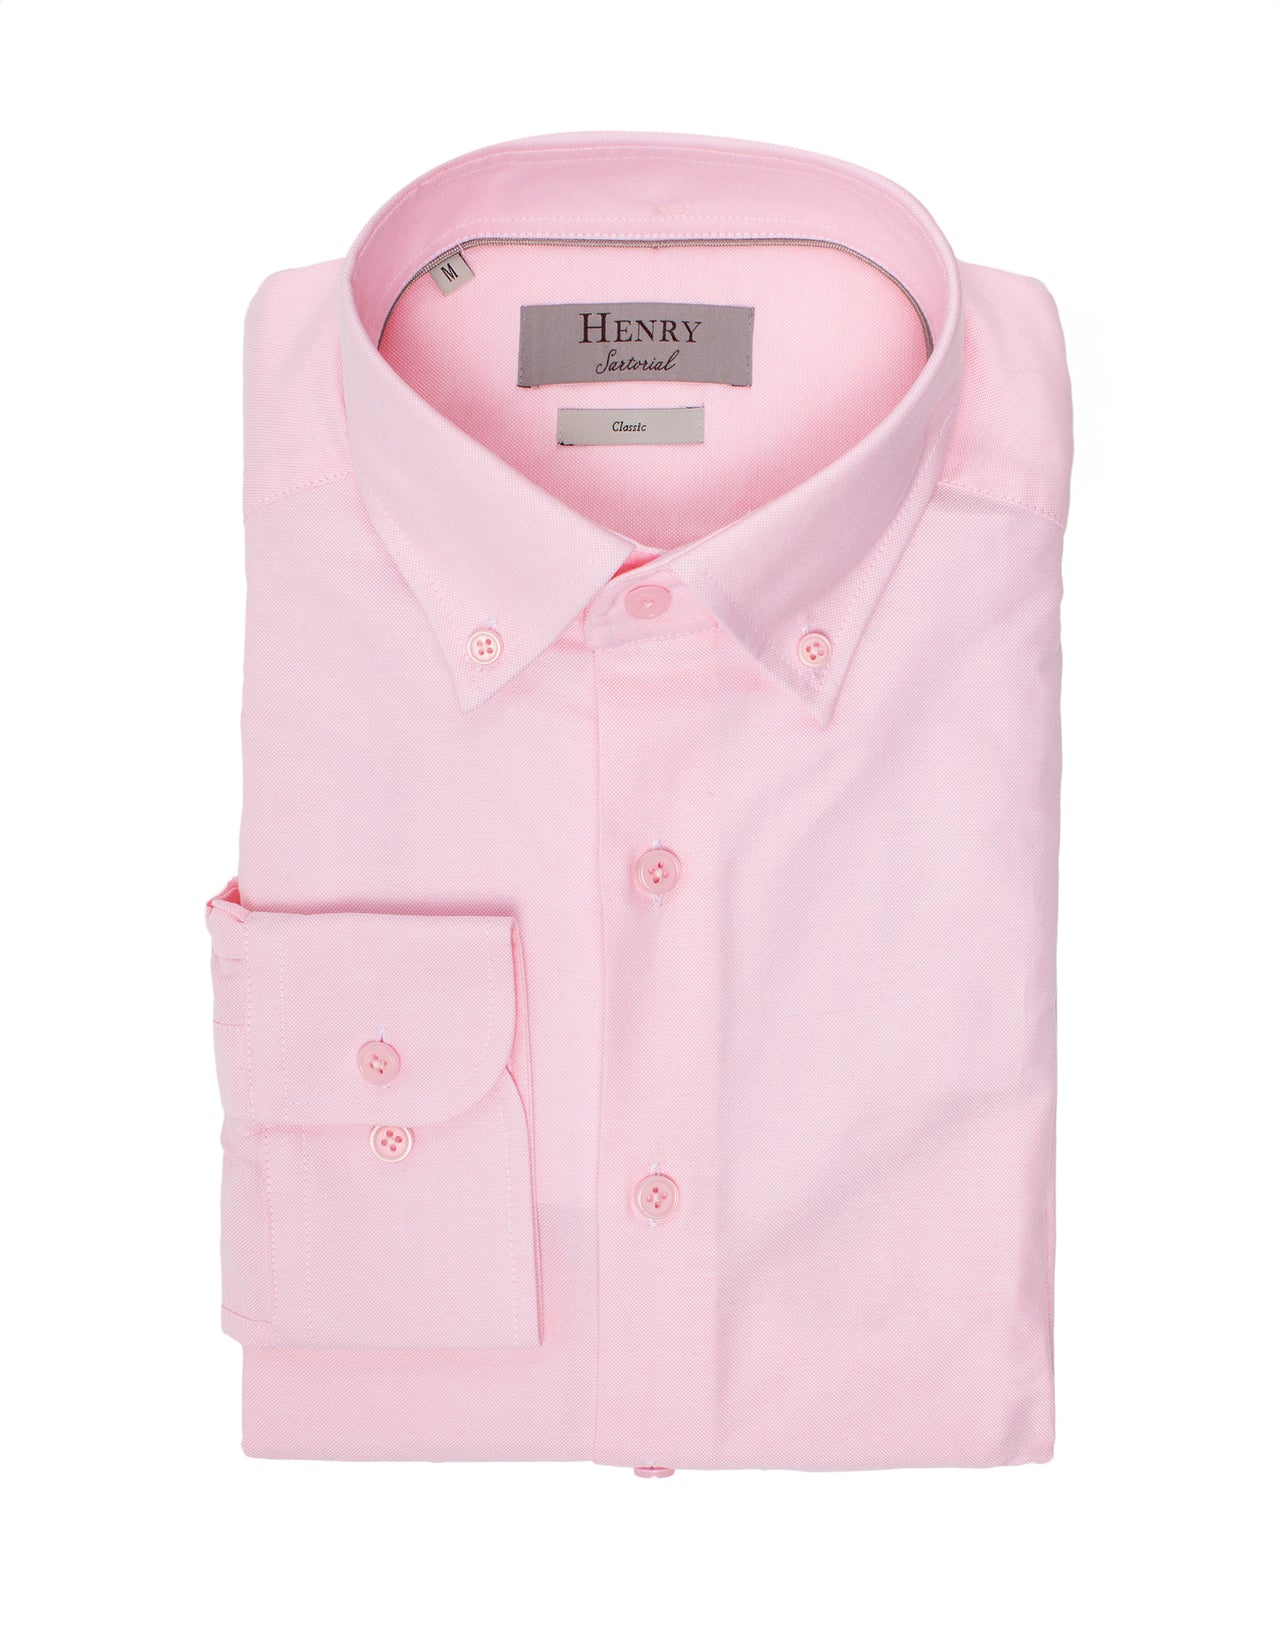 HENRY SARTORIAL Casual Plain Shirt PINK